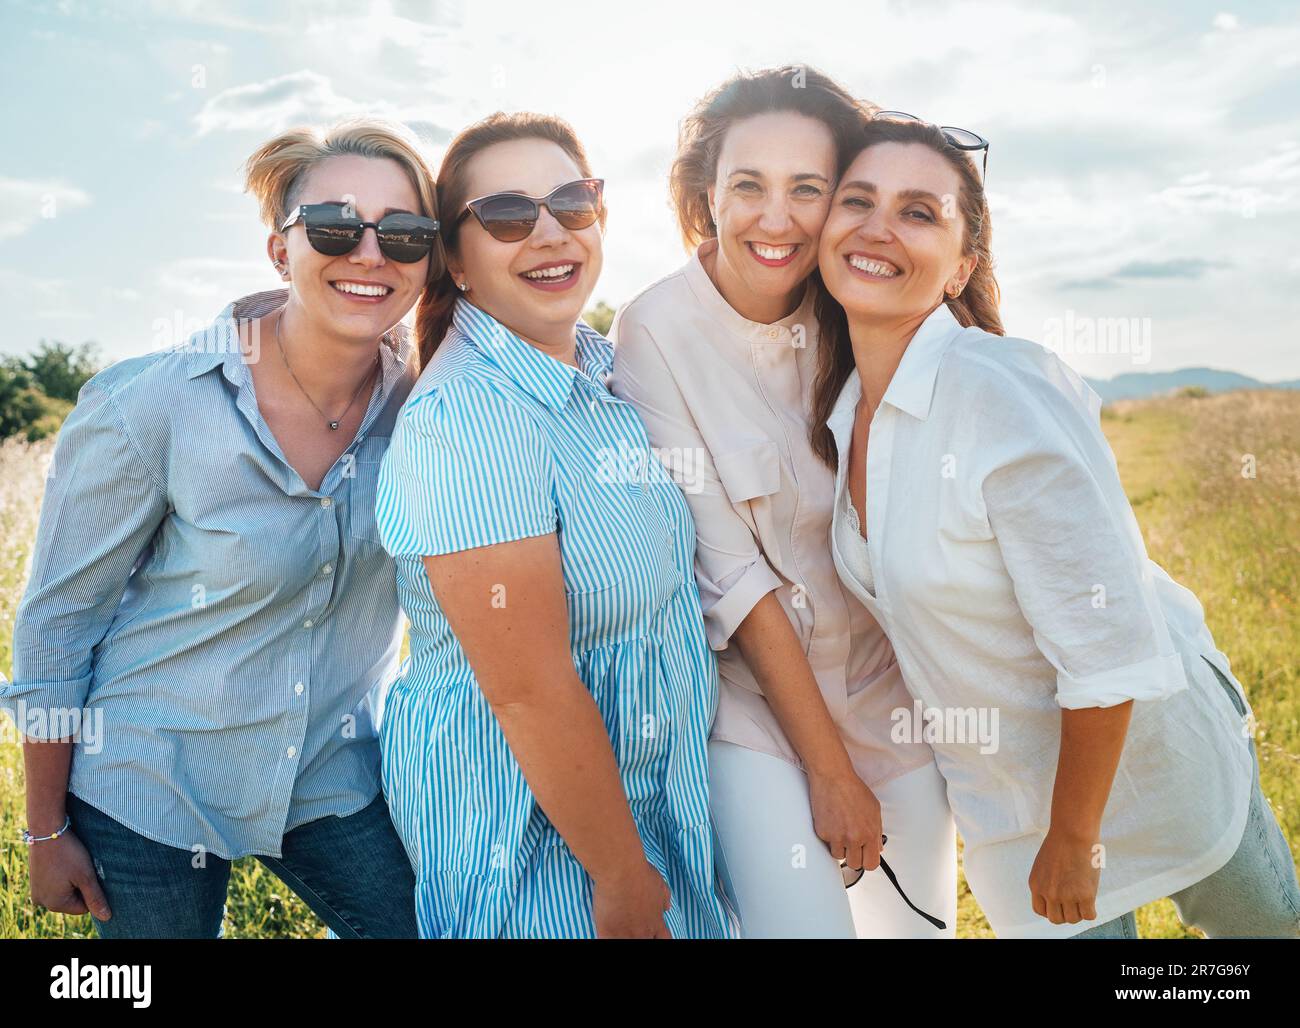 Portraits de quatre femmes souriantes et gaies en lunettes de soleil embrassant et regardant l'appareil photo pendant la marche en plein air avec un rétroéclairage lumineux et ensoleillé. ven femme Banque D'Images